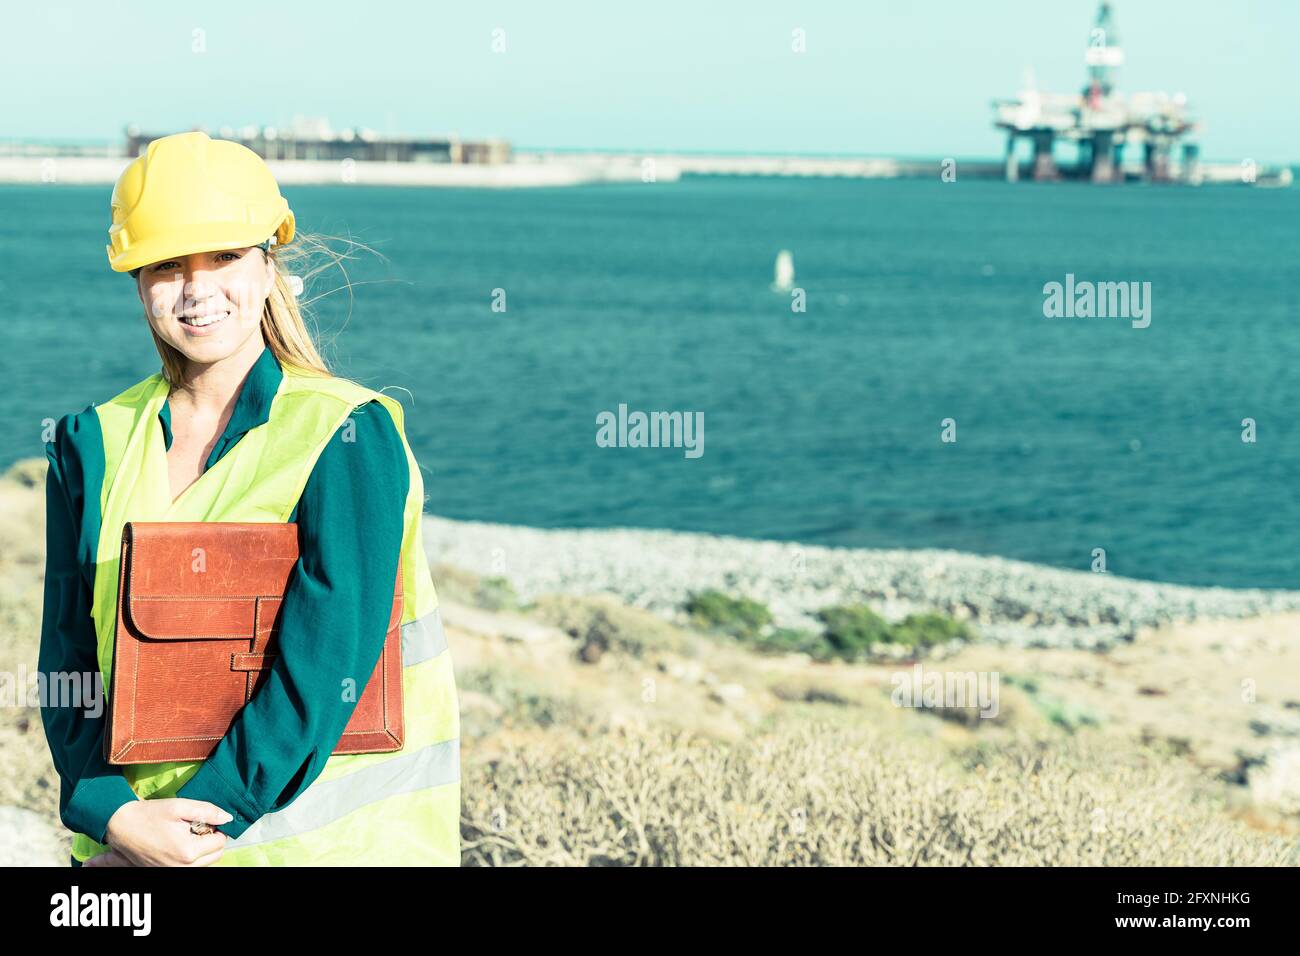 Un ritratto di una donna industriale ingegnere in piedi in un porto industriale. Concetto di lavoro professionale e industriale. Foto Stock